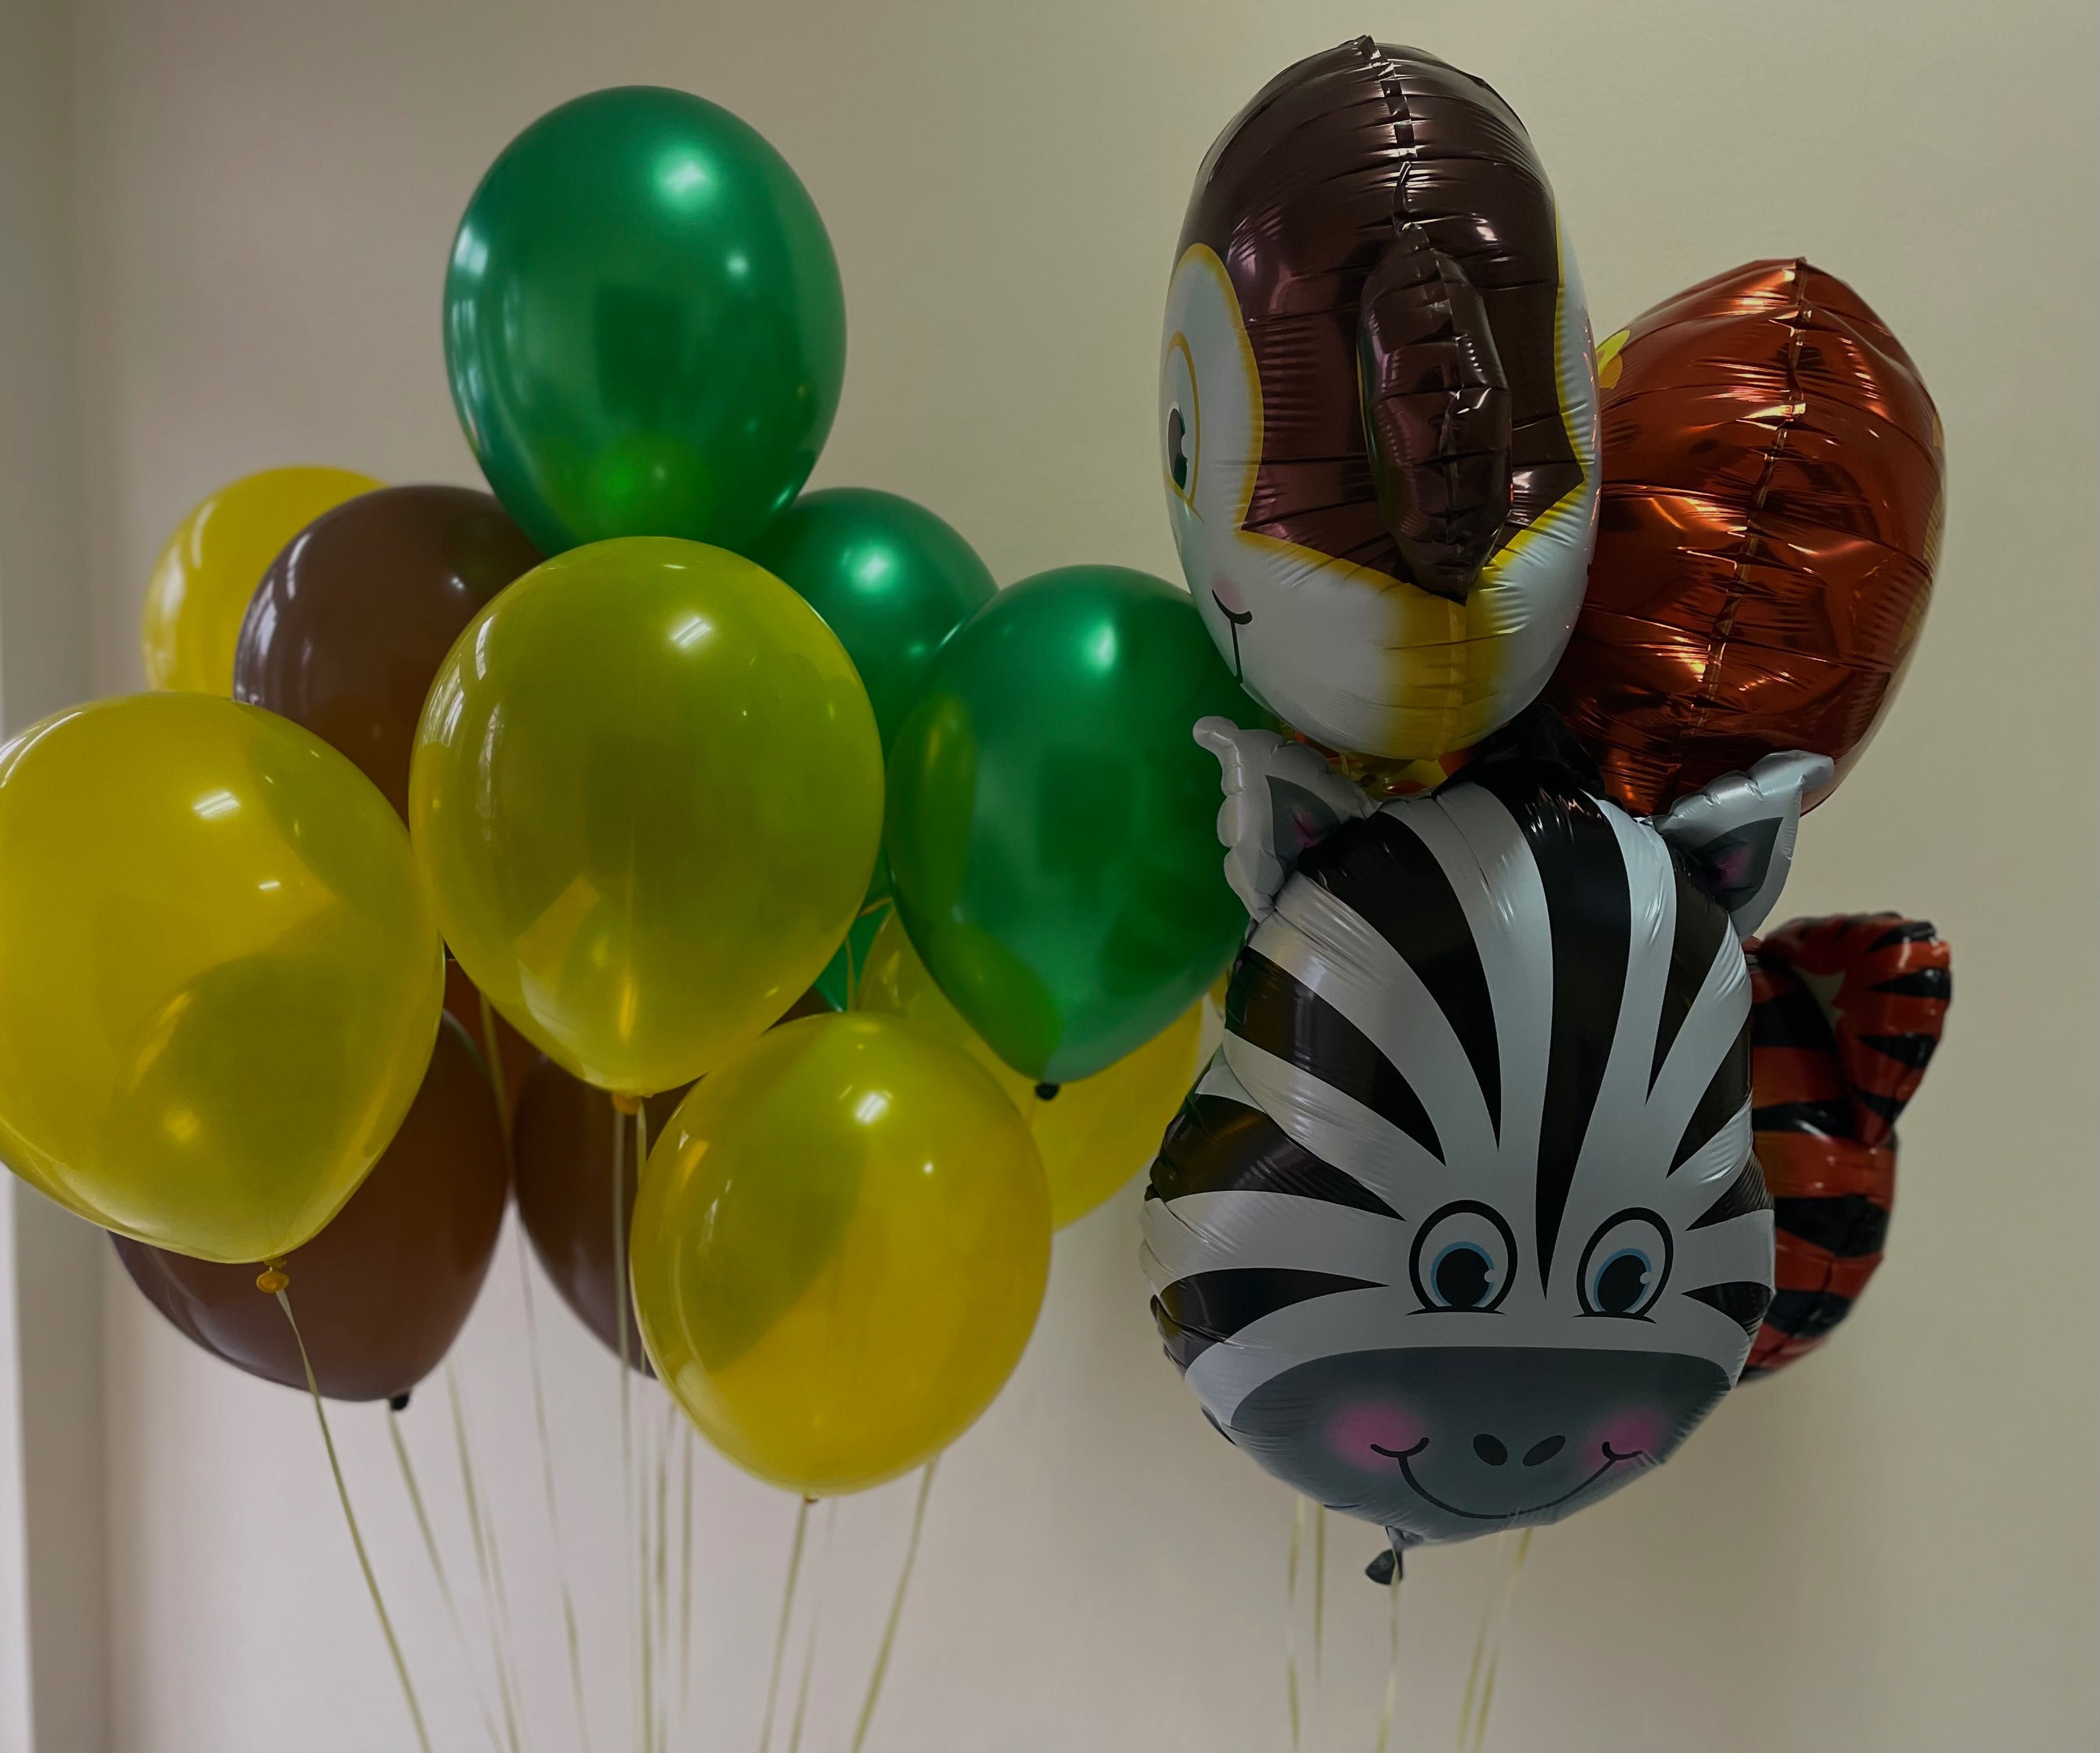 Балони с хелий| въздушни балони |Варна